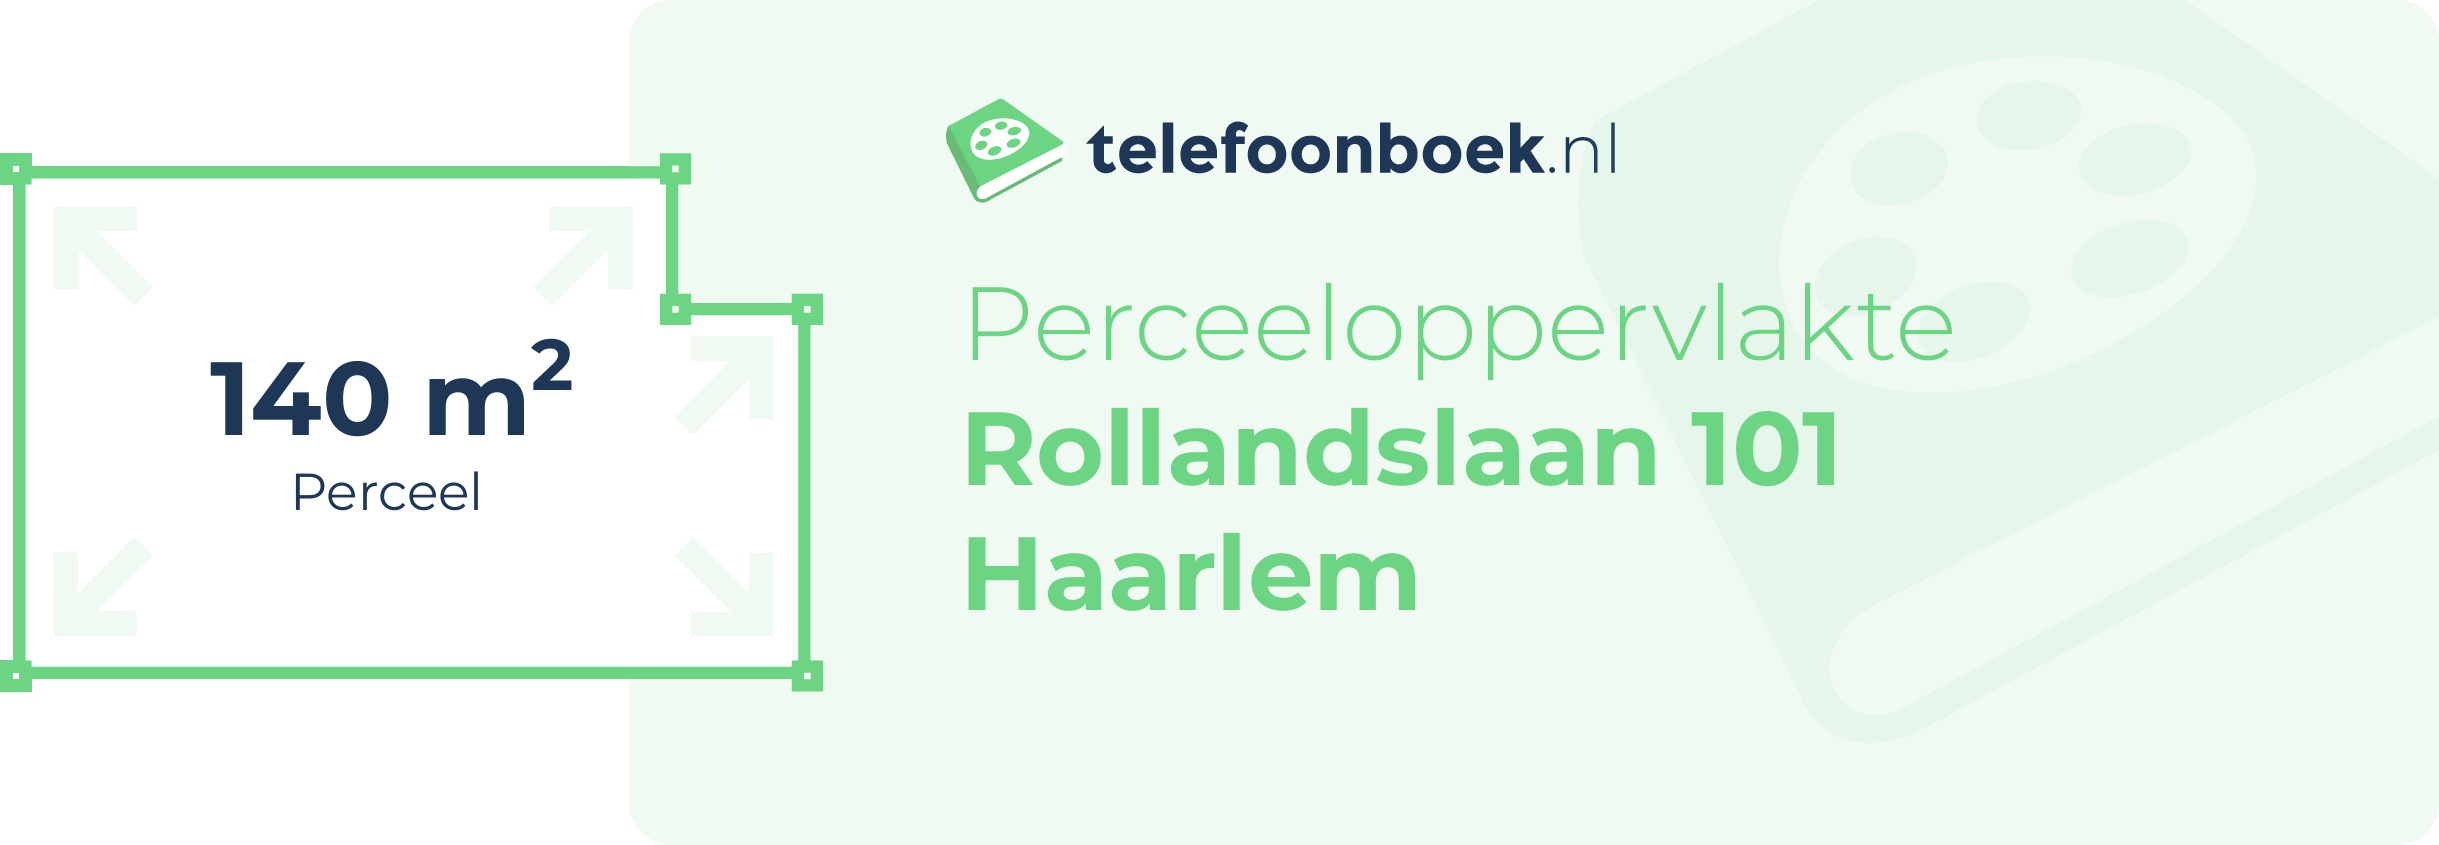 Perceeloppervlakte Rollandslaan 101 Haarlem